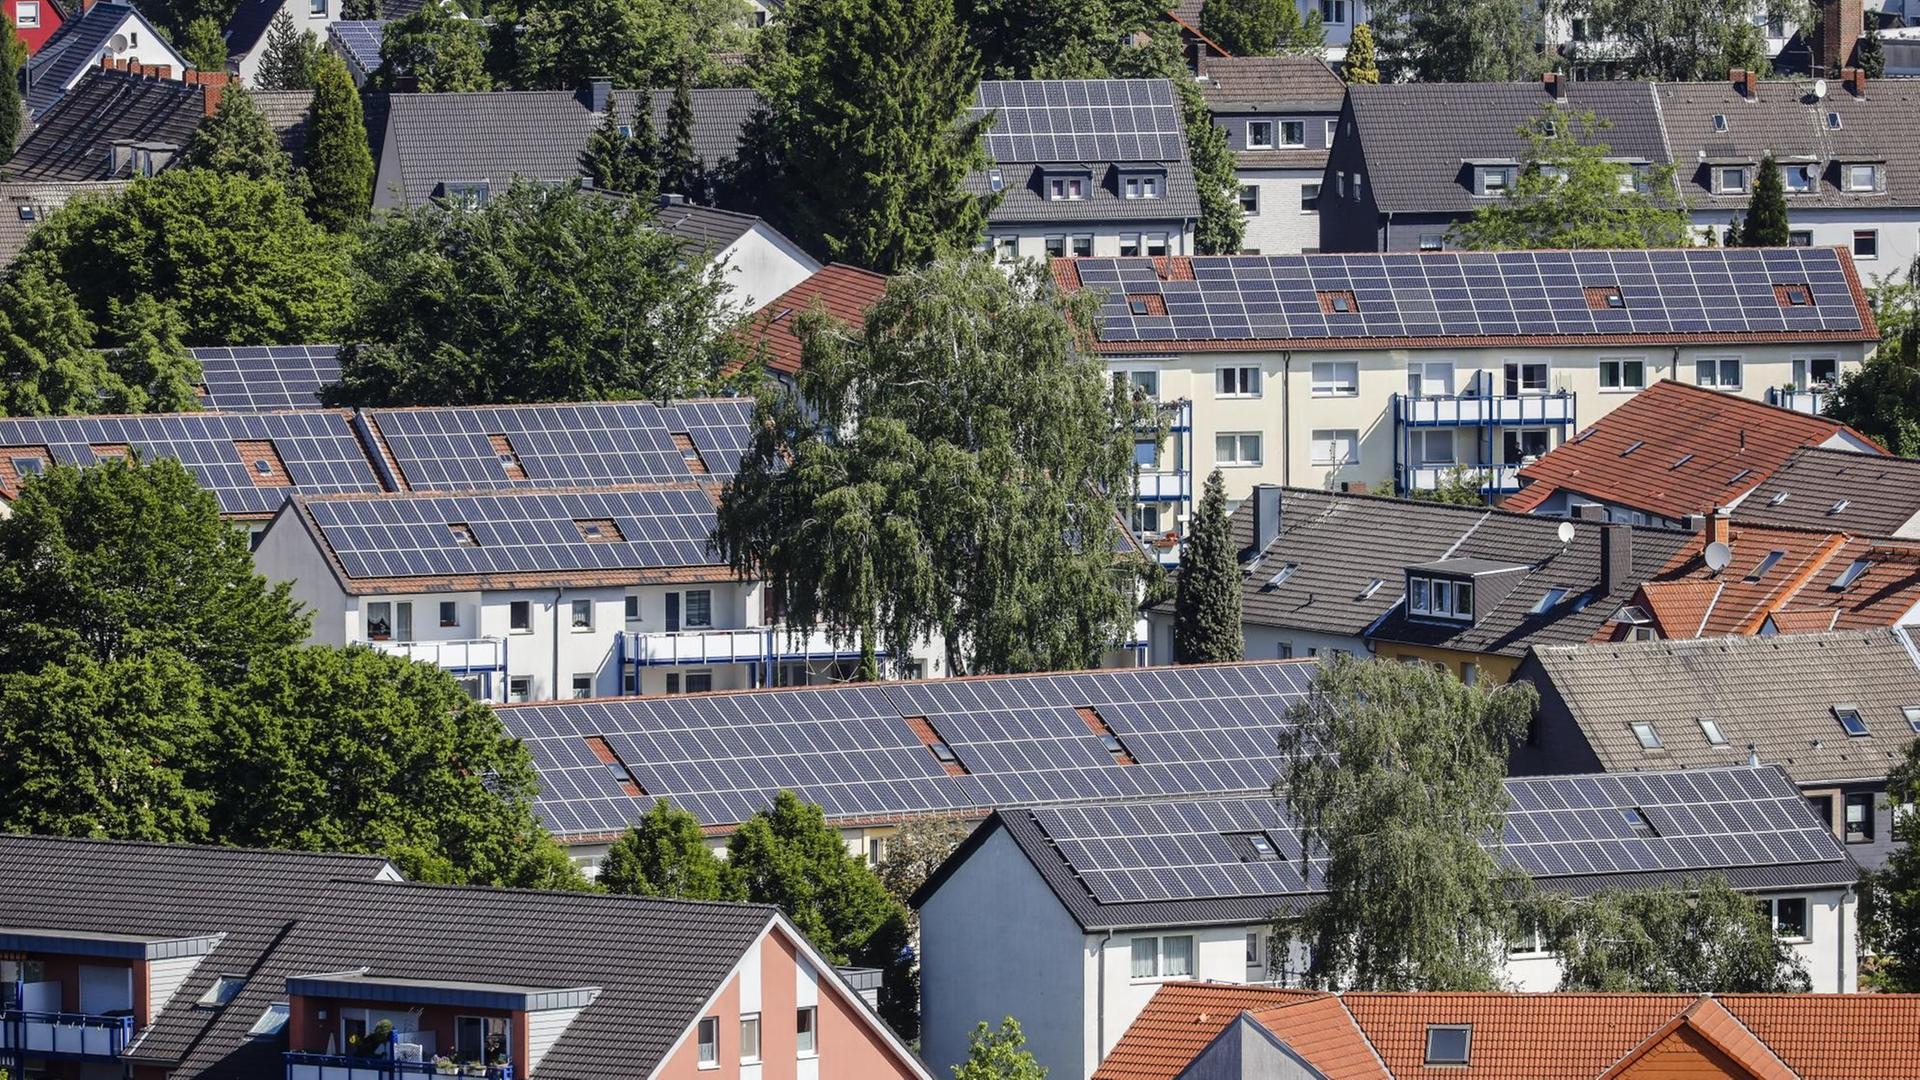 Mehrfamilienhäuser mit Solardächern in Bottrop, Nordrhein-Westfalen.